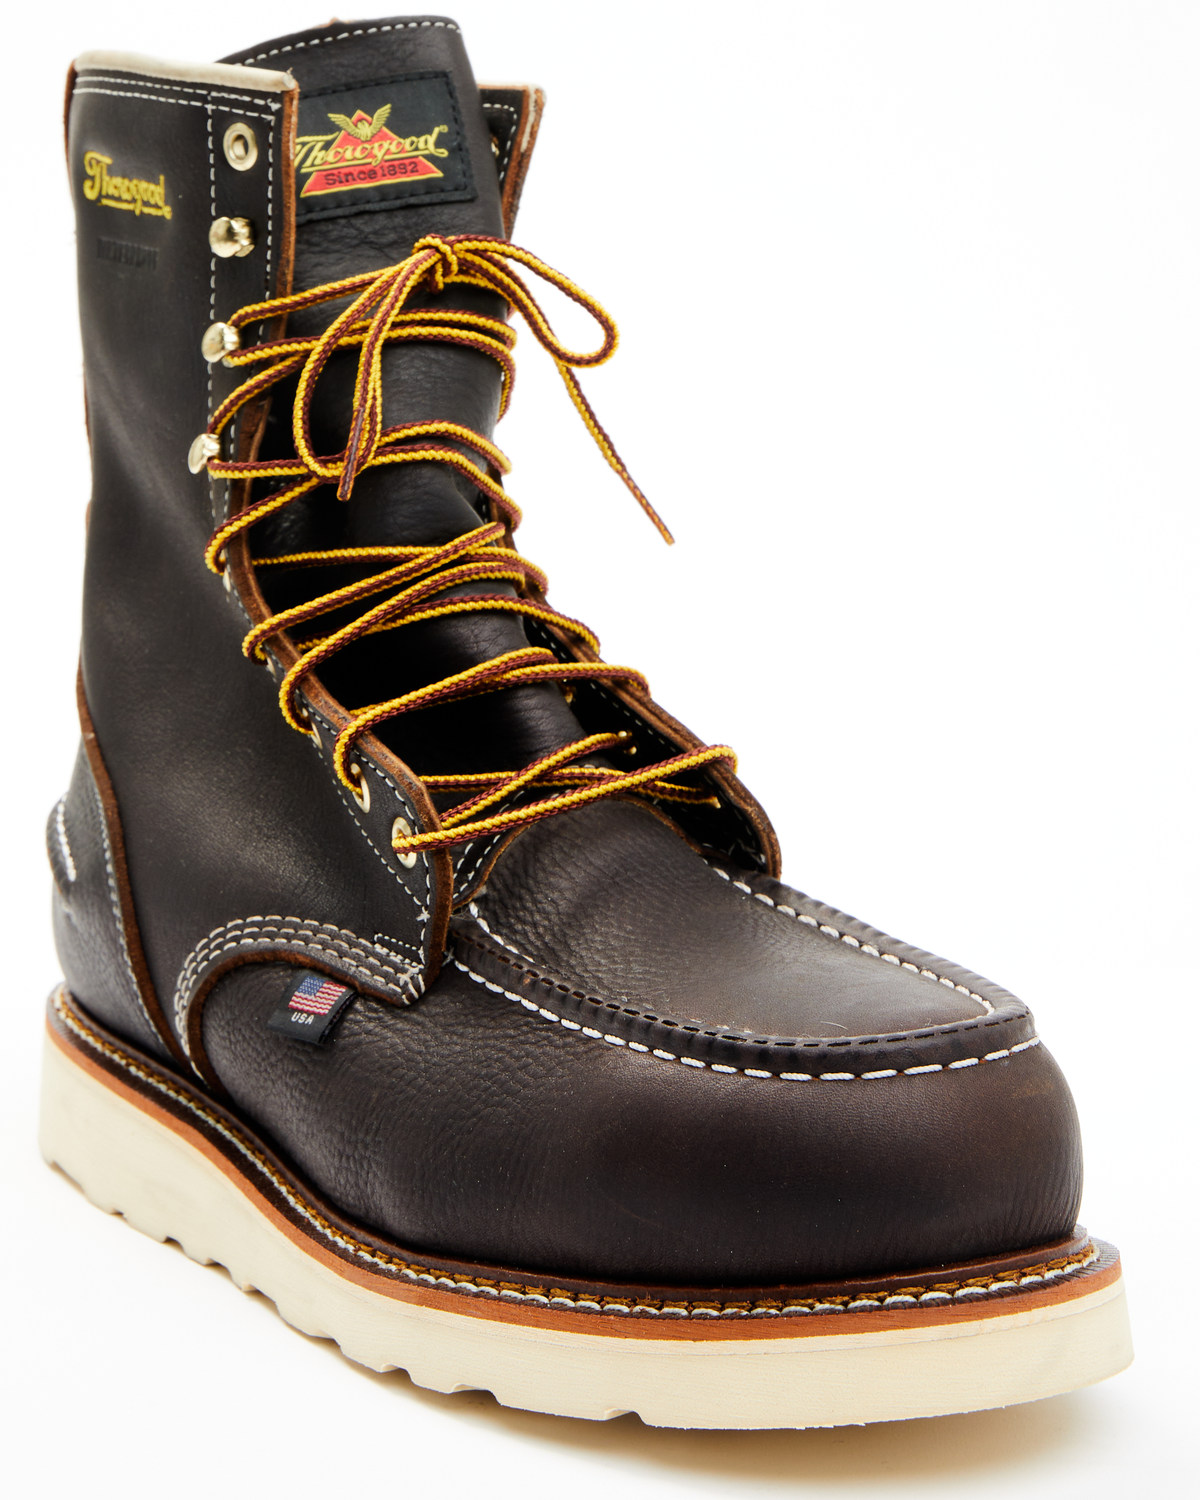 Thorogood Men's American Heritage 8" Waterproof Work Boots - Steel Toe